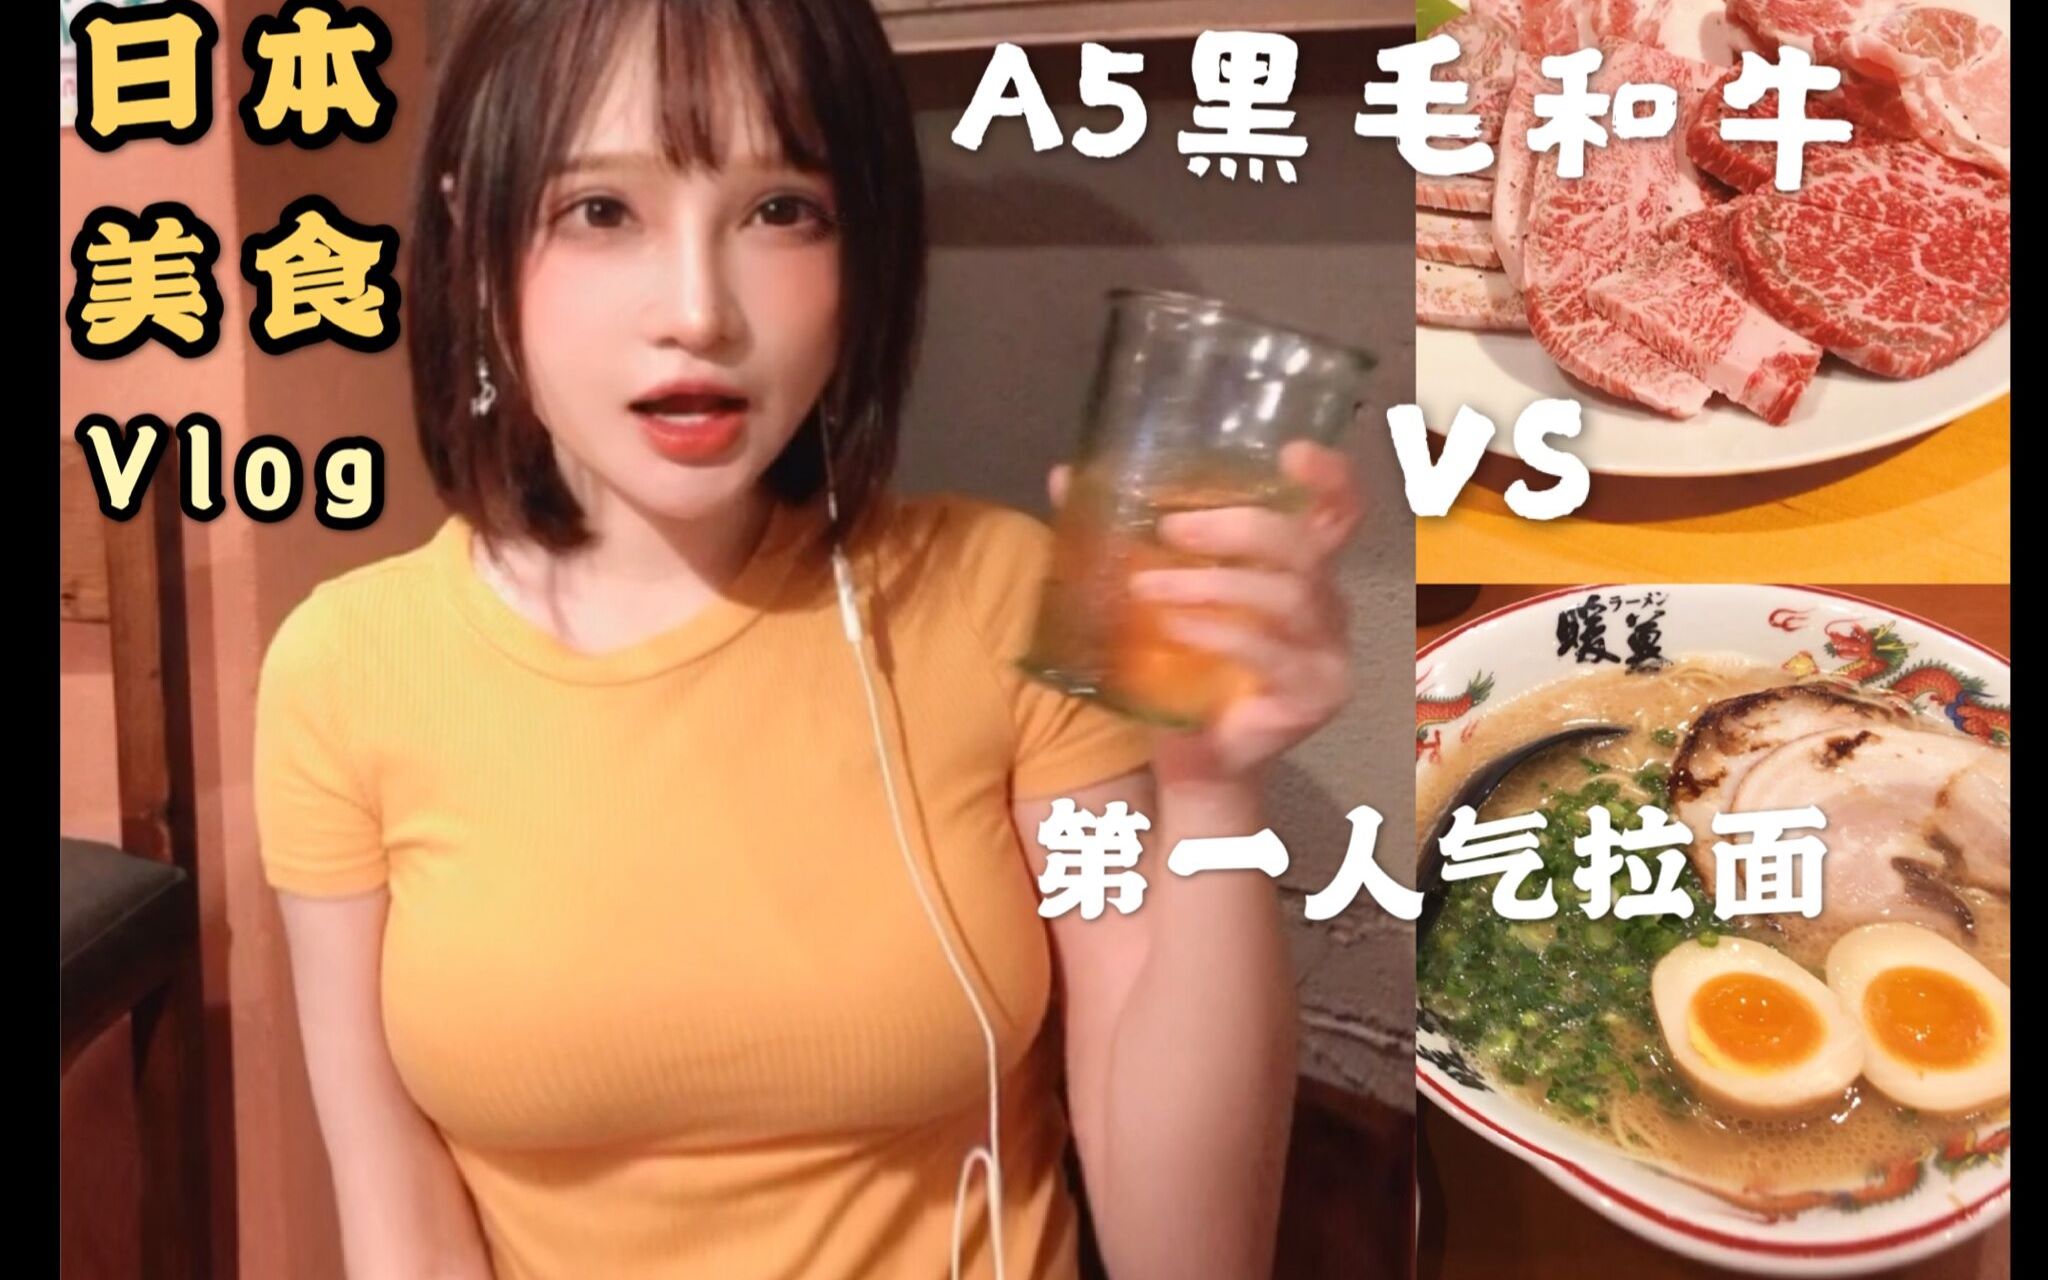 日本美食vlog- 烤肉和牛vs第一拉面【千夜未来】